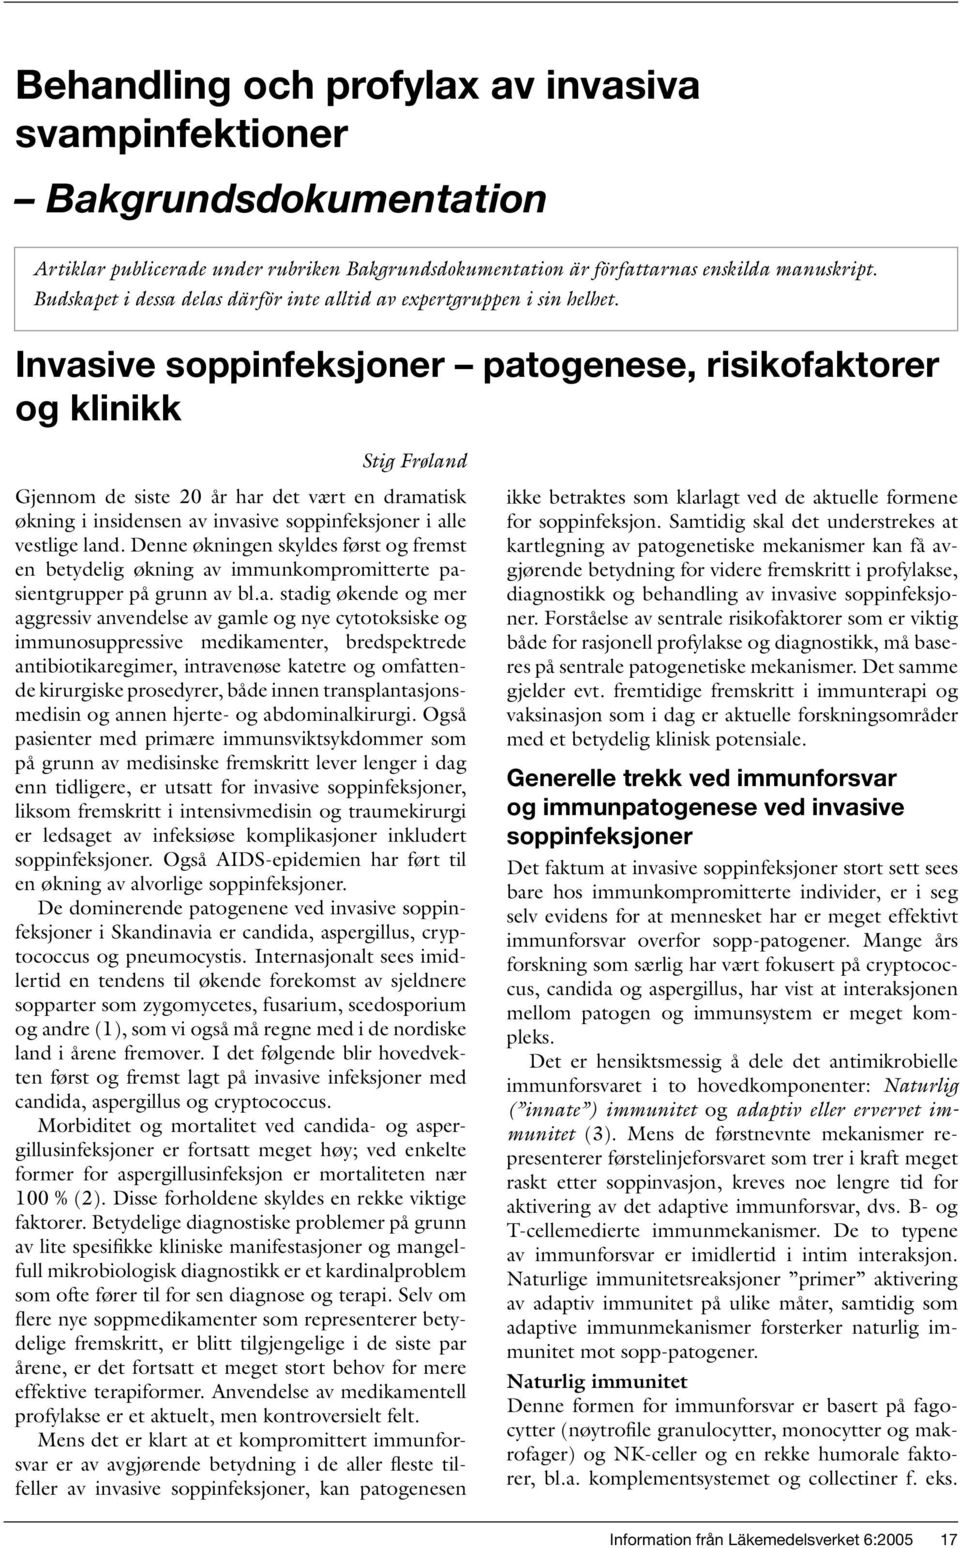 Invasive soppinfeksjoner patogenese, risikofaktorer og klinikk Stig Frøland Gjennom de siste 20 år har det vært en dramatisk økning i insidensen av invasive soppinfeksjoner i alle vestlige land.